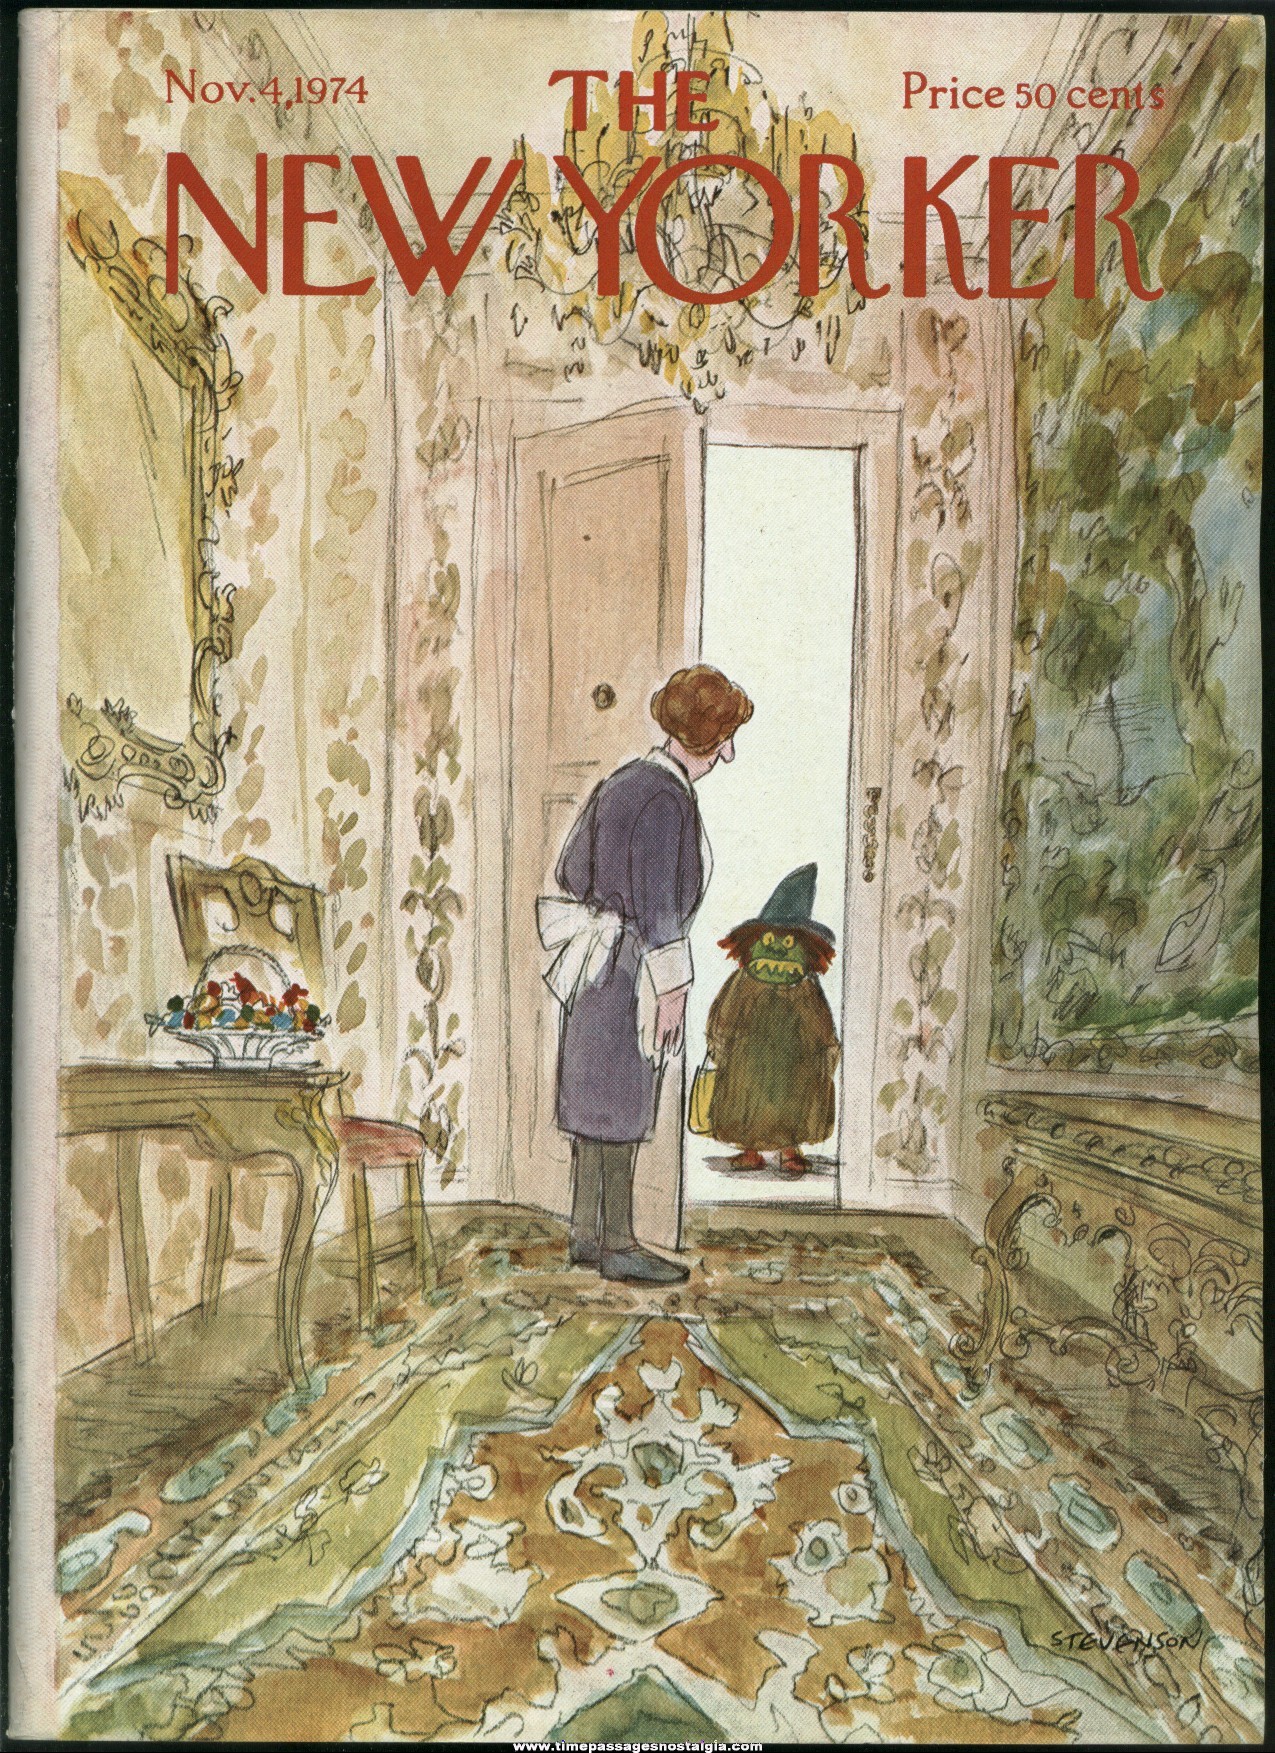 New Yorker Magazine - November 4, 1974 - Cover by James Stevenson